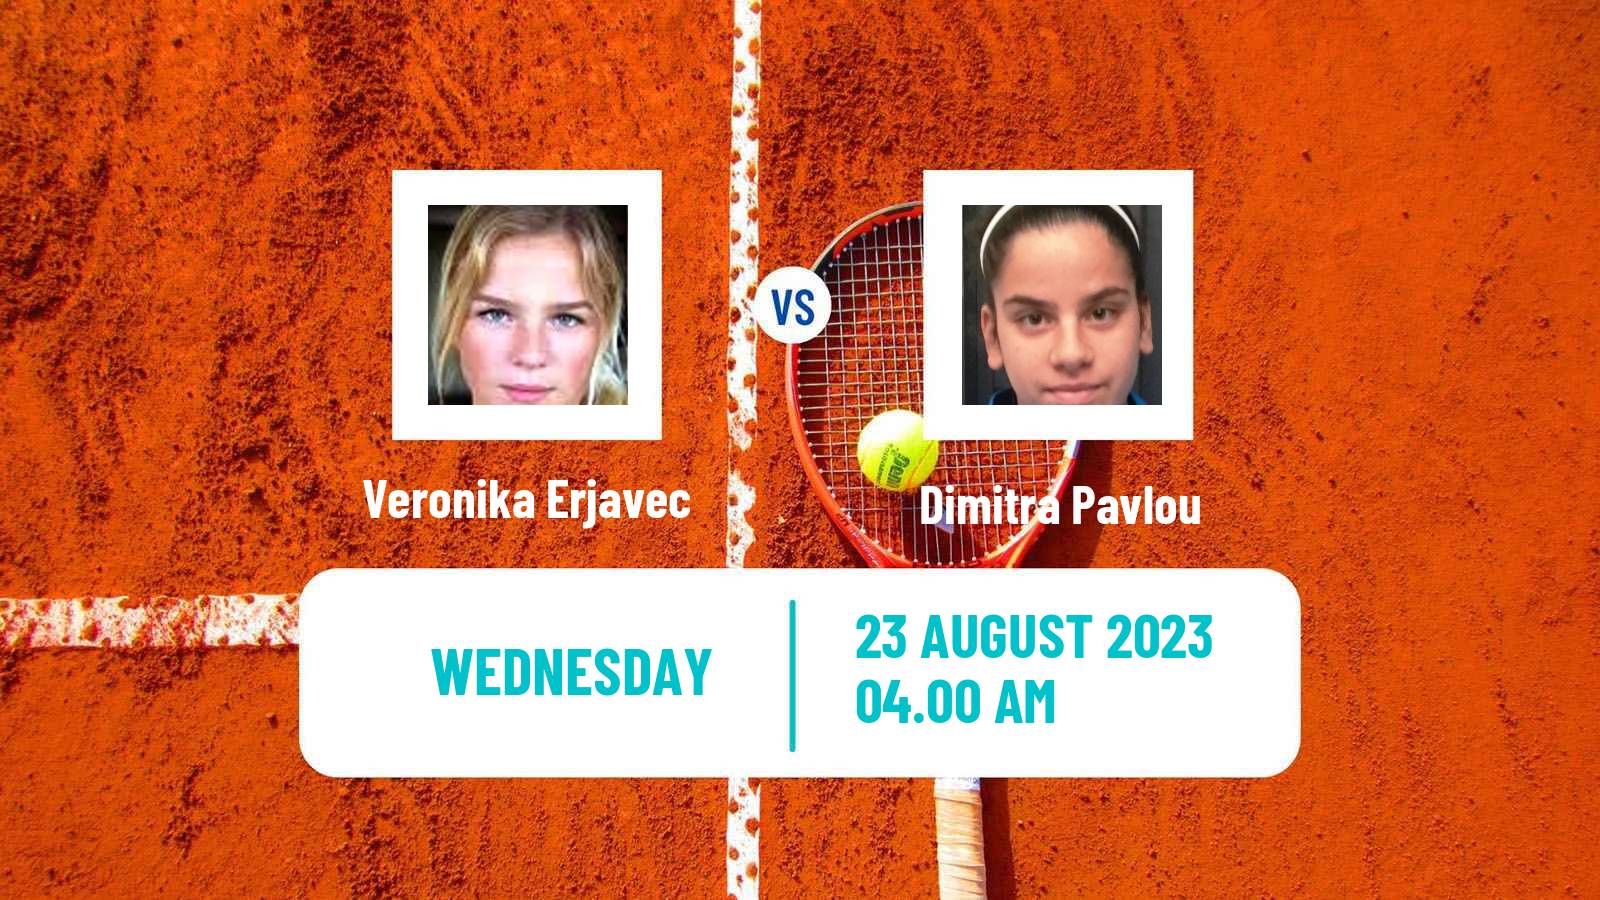 Tennis ITF W60 Prerov Women Veronika Erjavec - Dimitra Pavlou